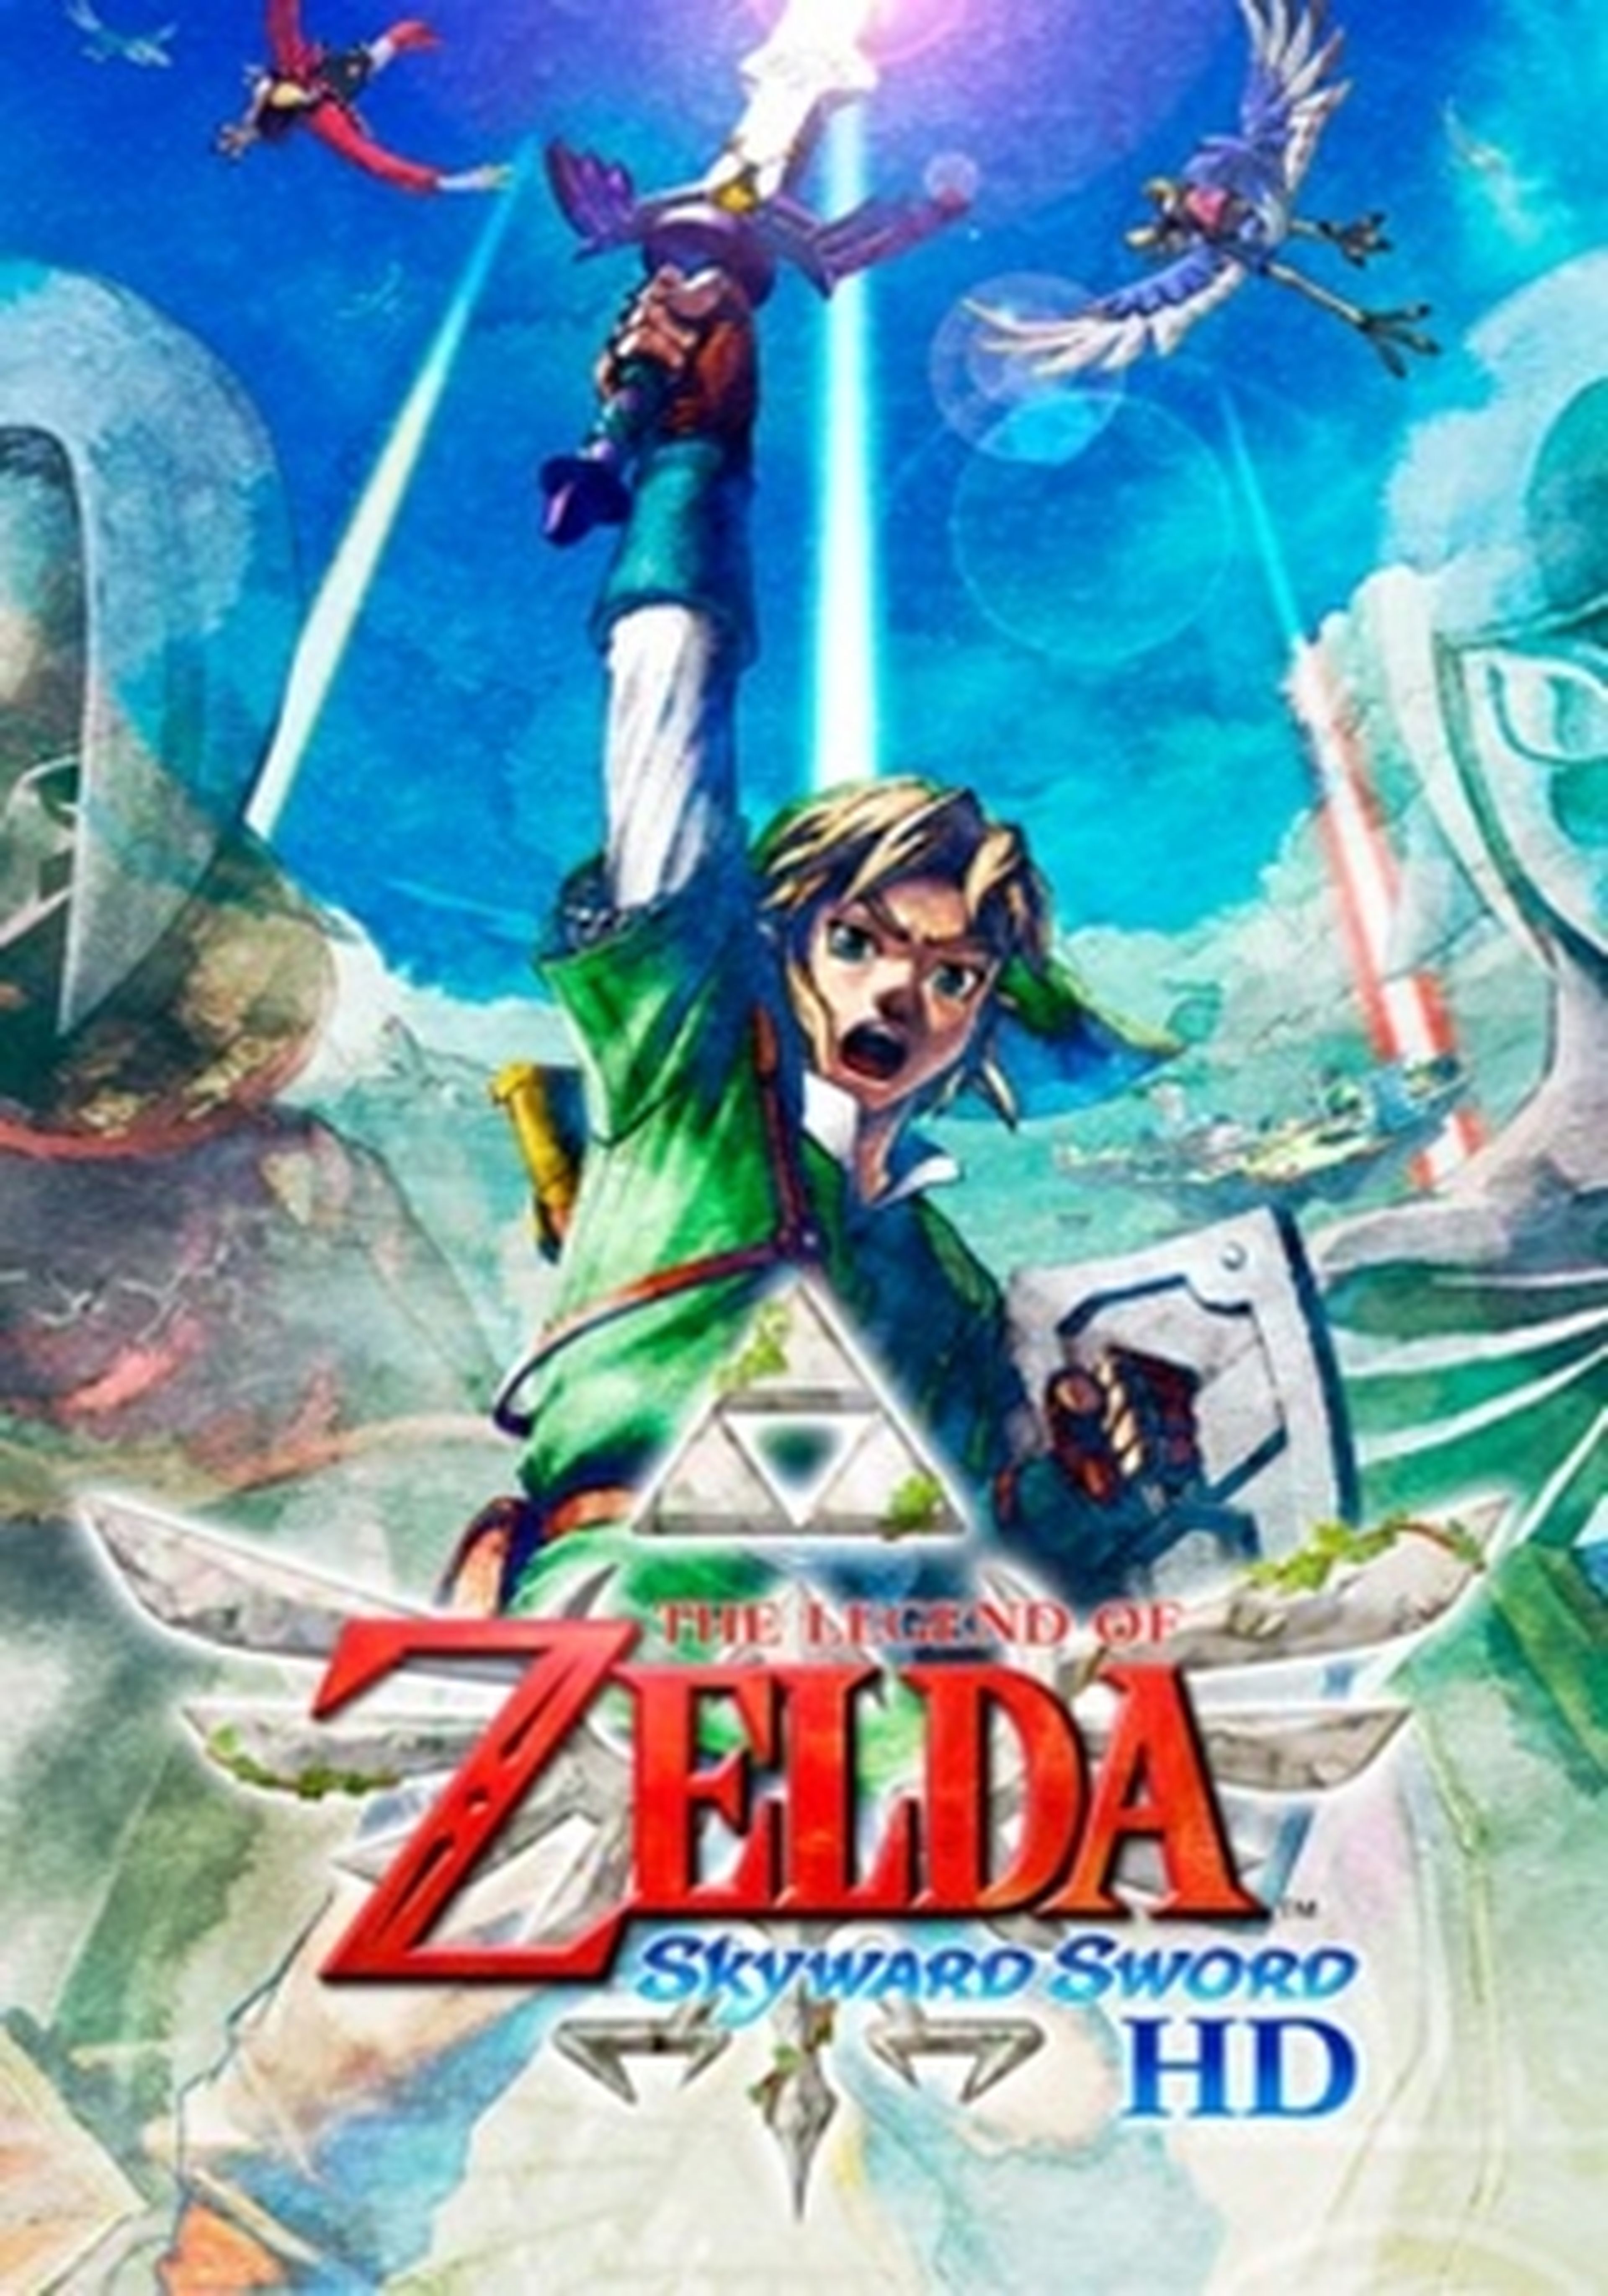 The Legend of Zelda Skyward Sword HD cartel